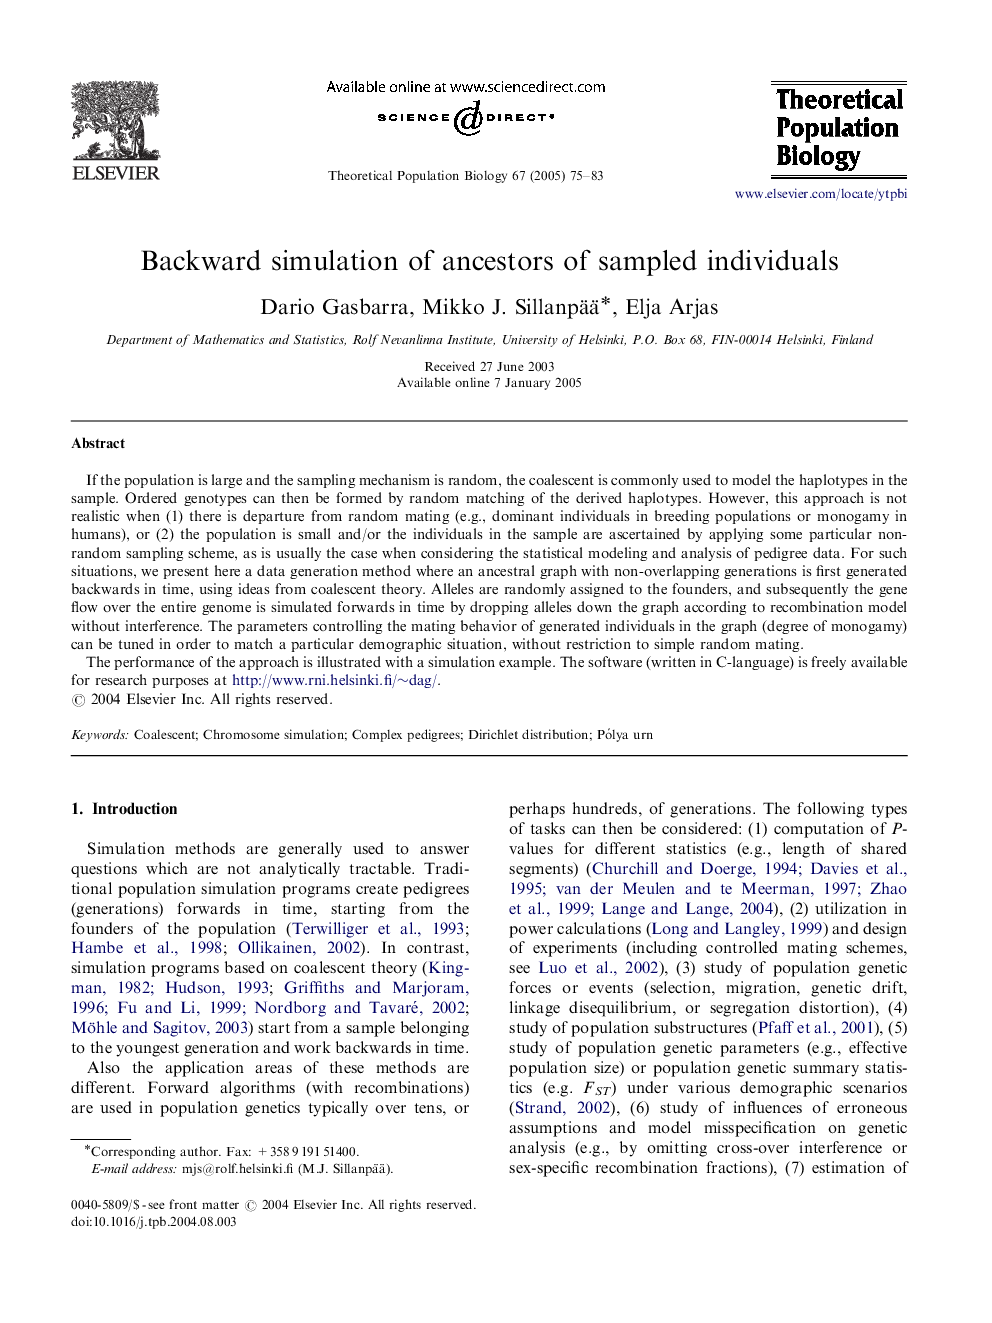 Backward simulation of ancestors of sampled individuals